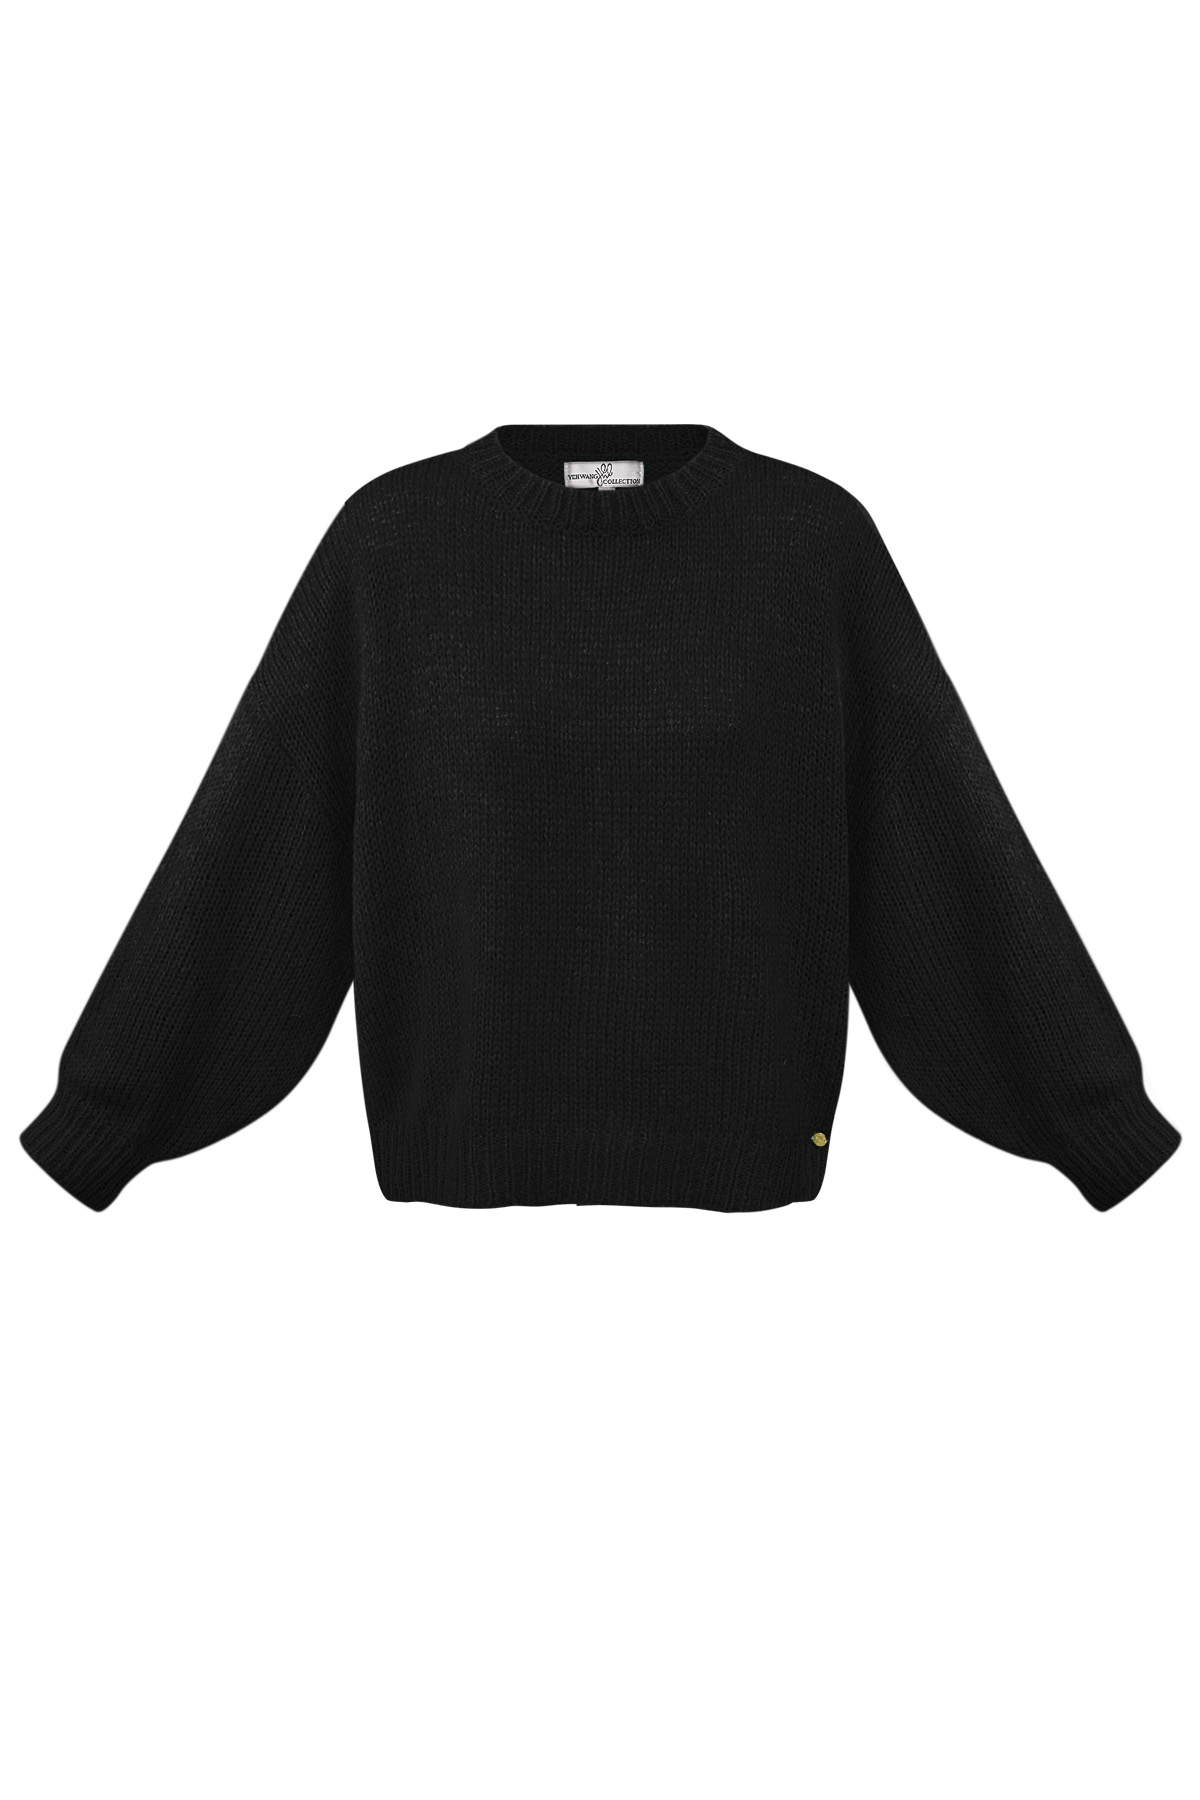 Pullover gemütlich - schwarz